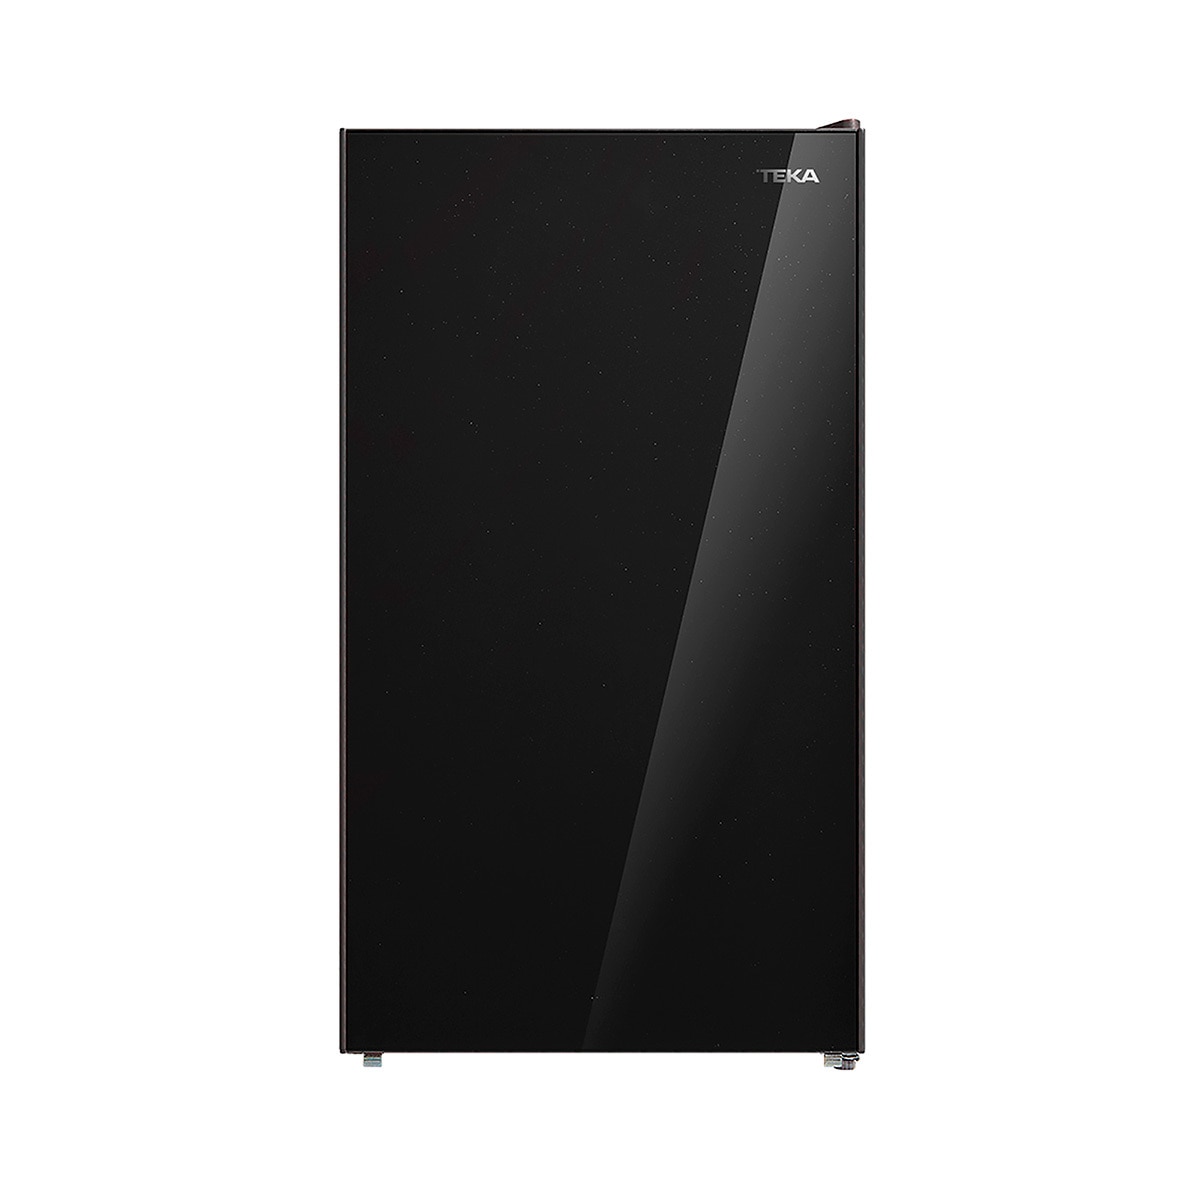 Refrigerador frigobar Teka de 4', color negro 